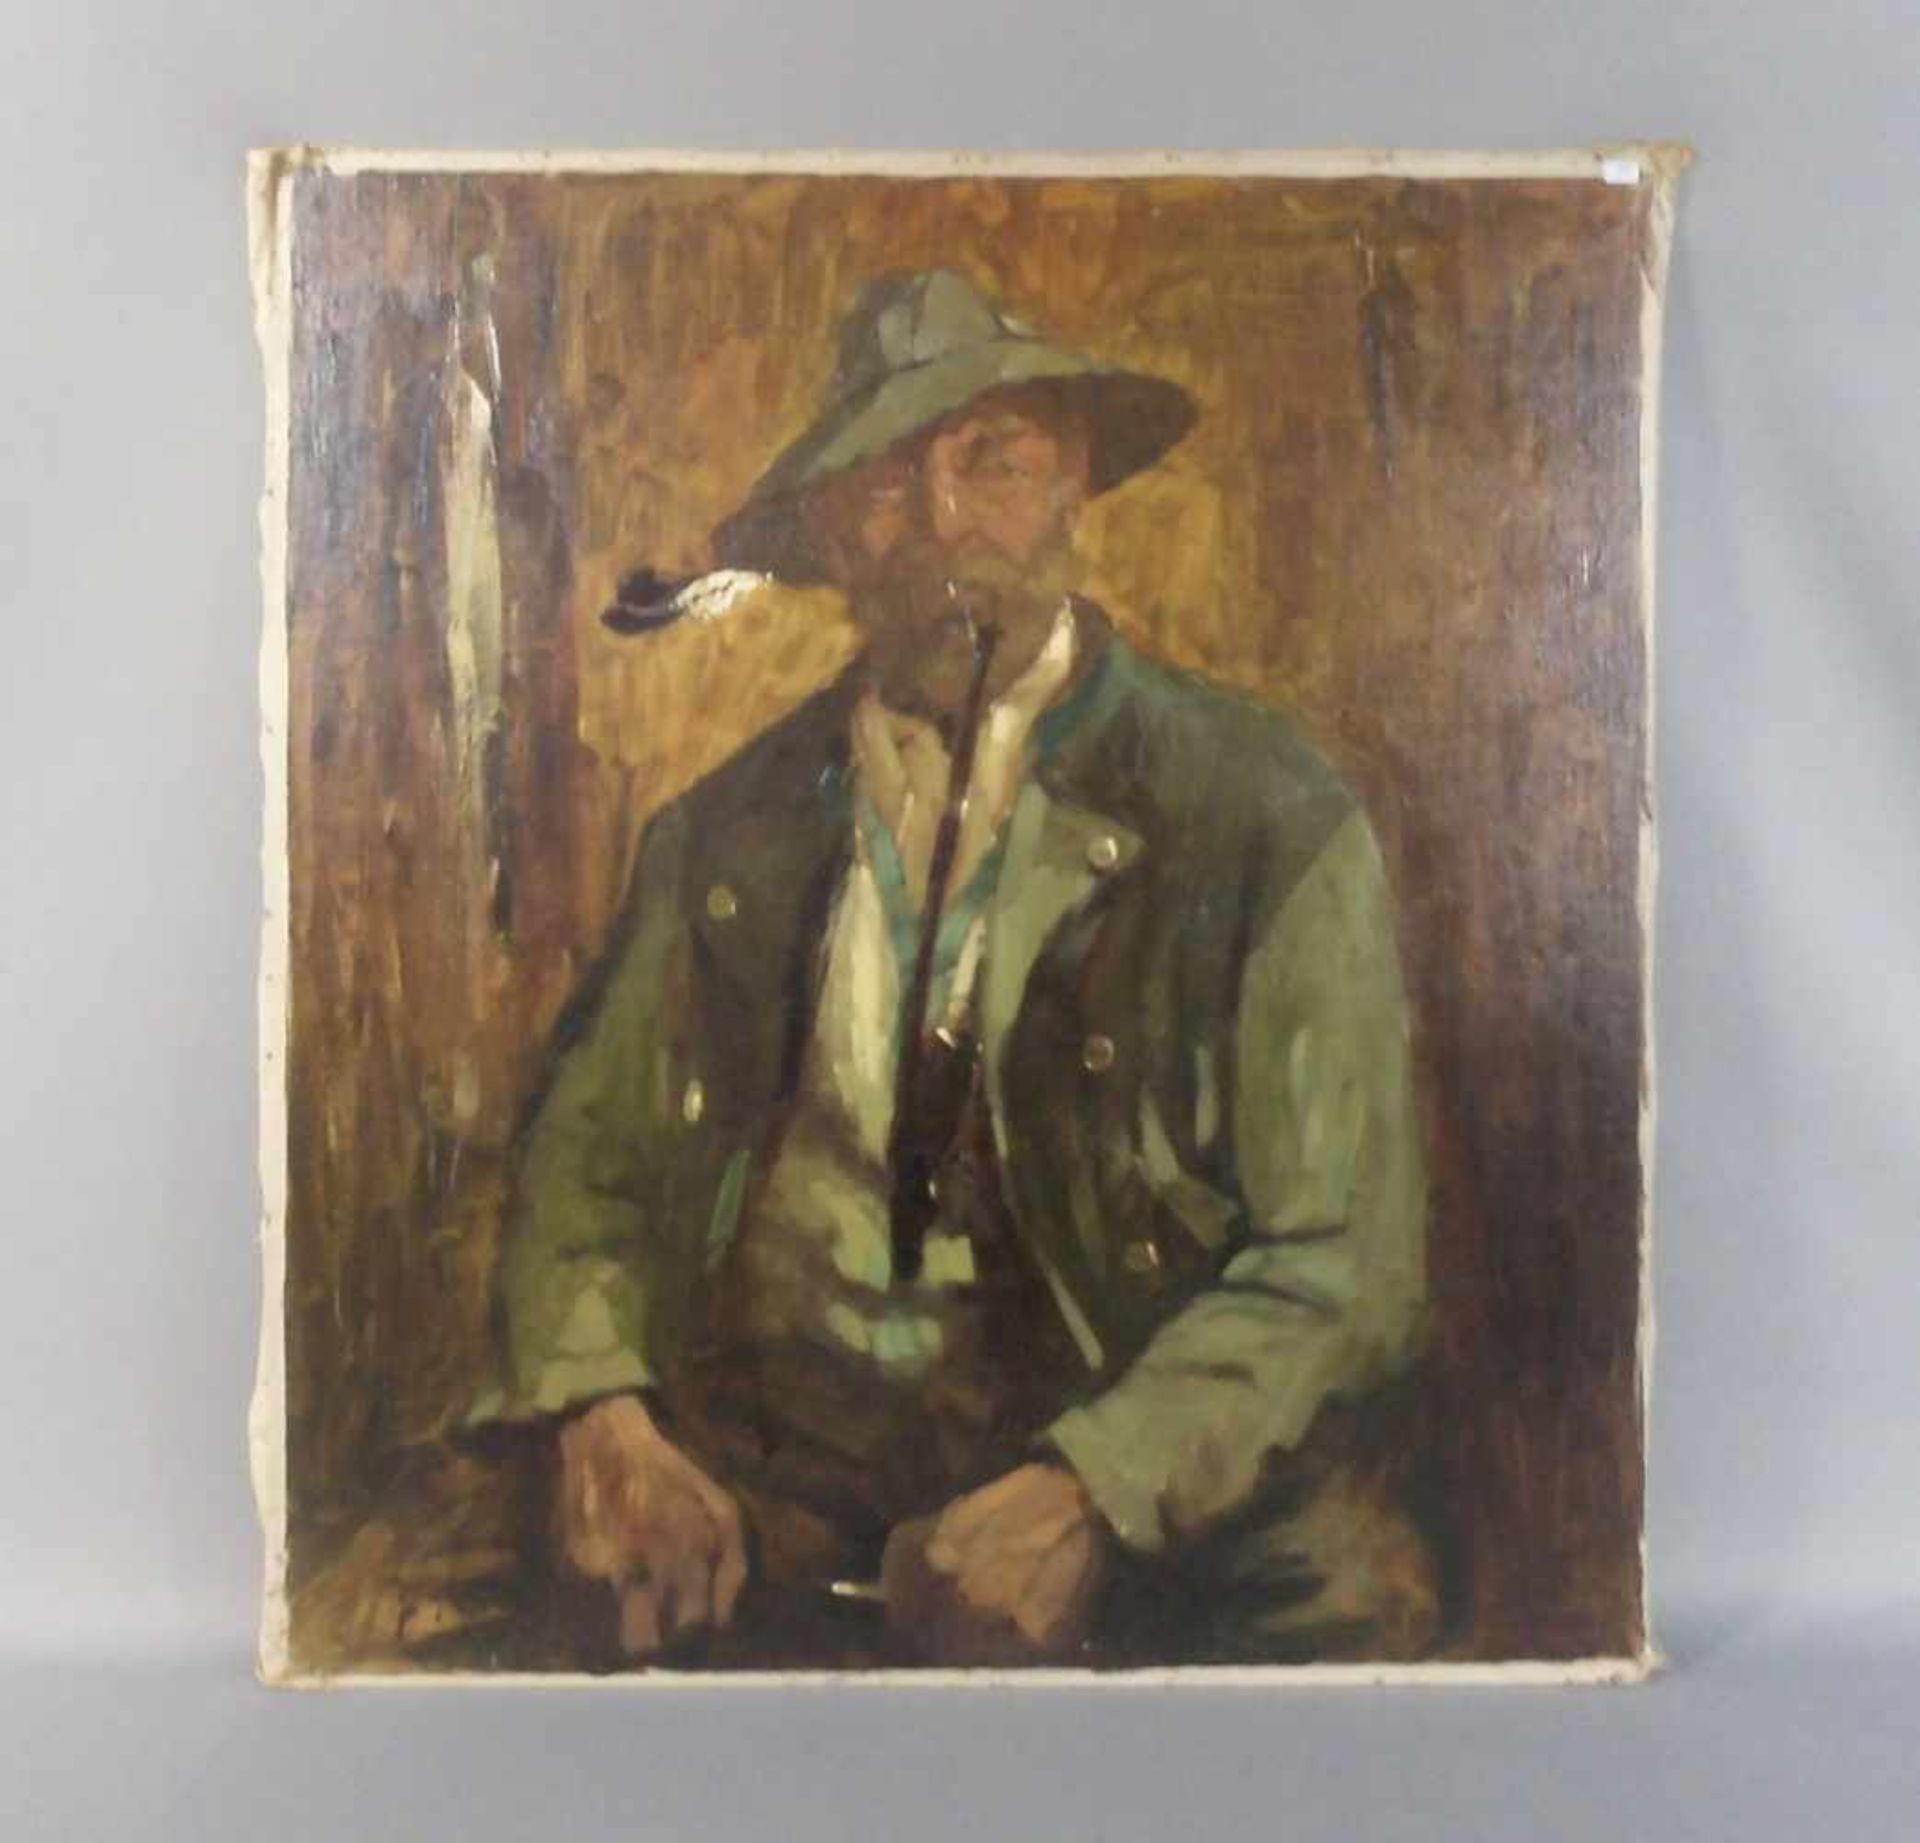 KLARL, JOSEF (Straubing 1909-1986 Schelklingen), Gemälde / painting: "Bildnis eines Mannes mit